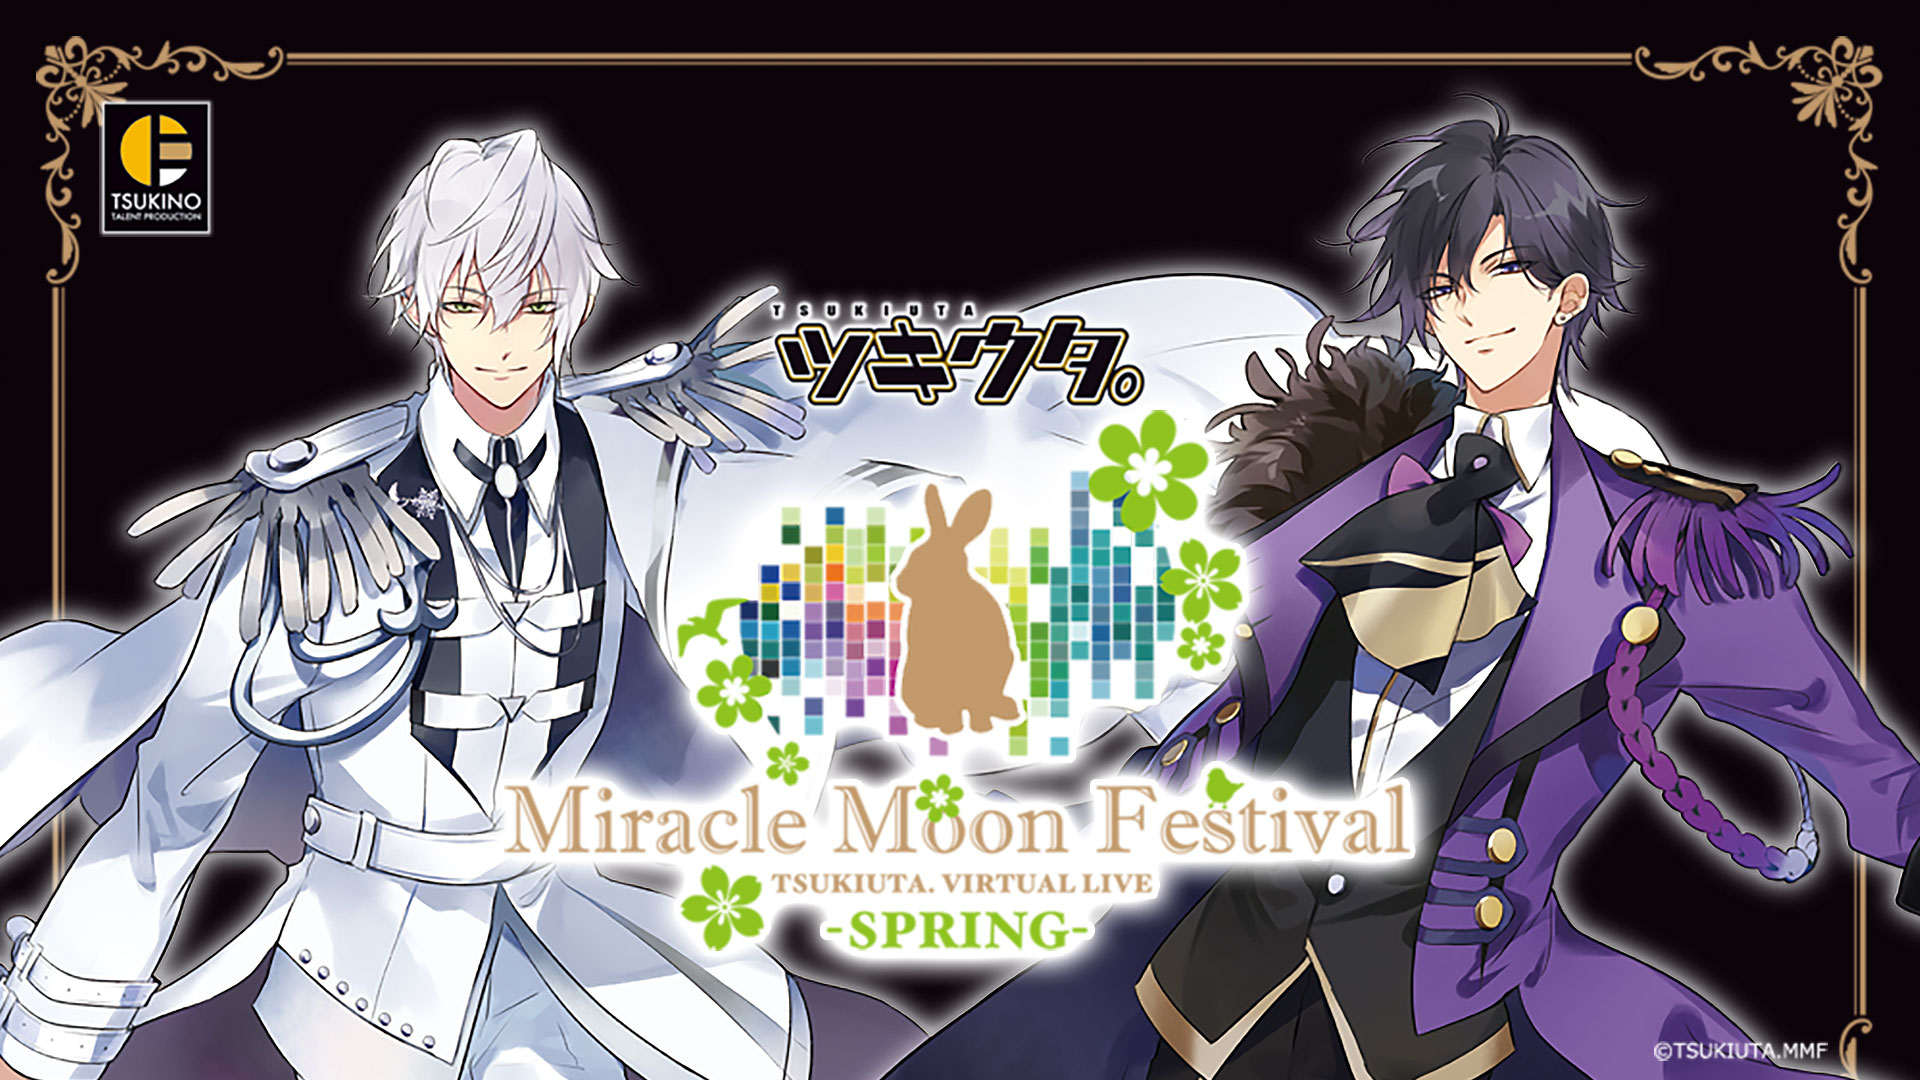 ツキウタ。Miracle Moon Festival -TSUKIUTA. VIRTUAL LIVE 2019 Four Seasons-